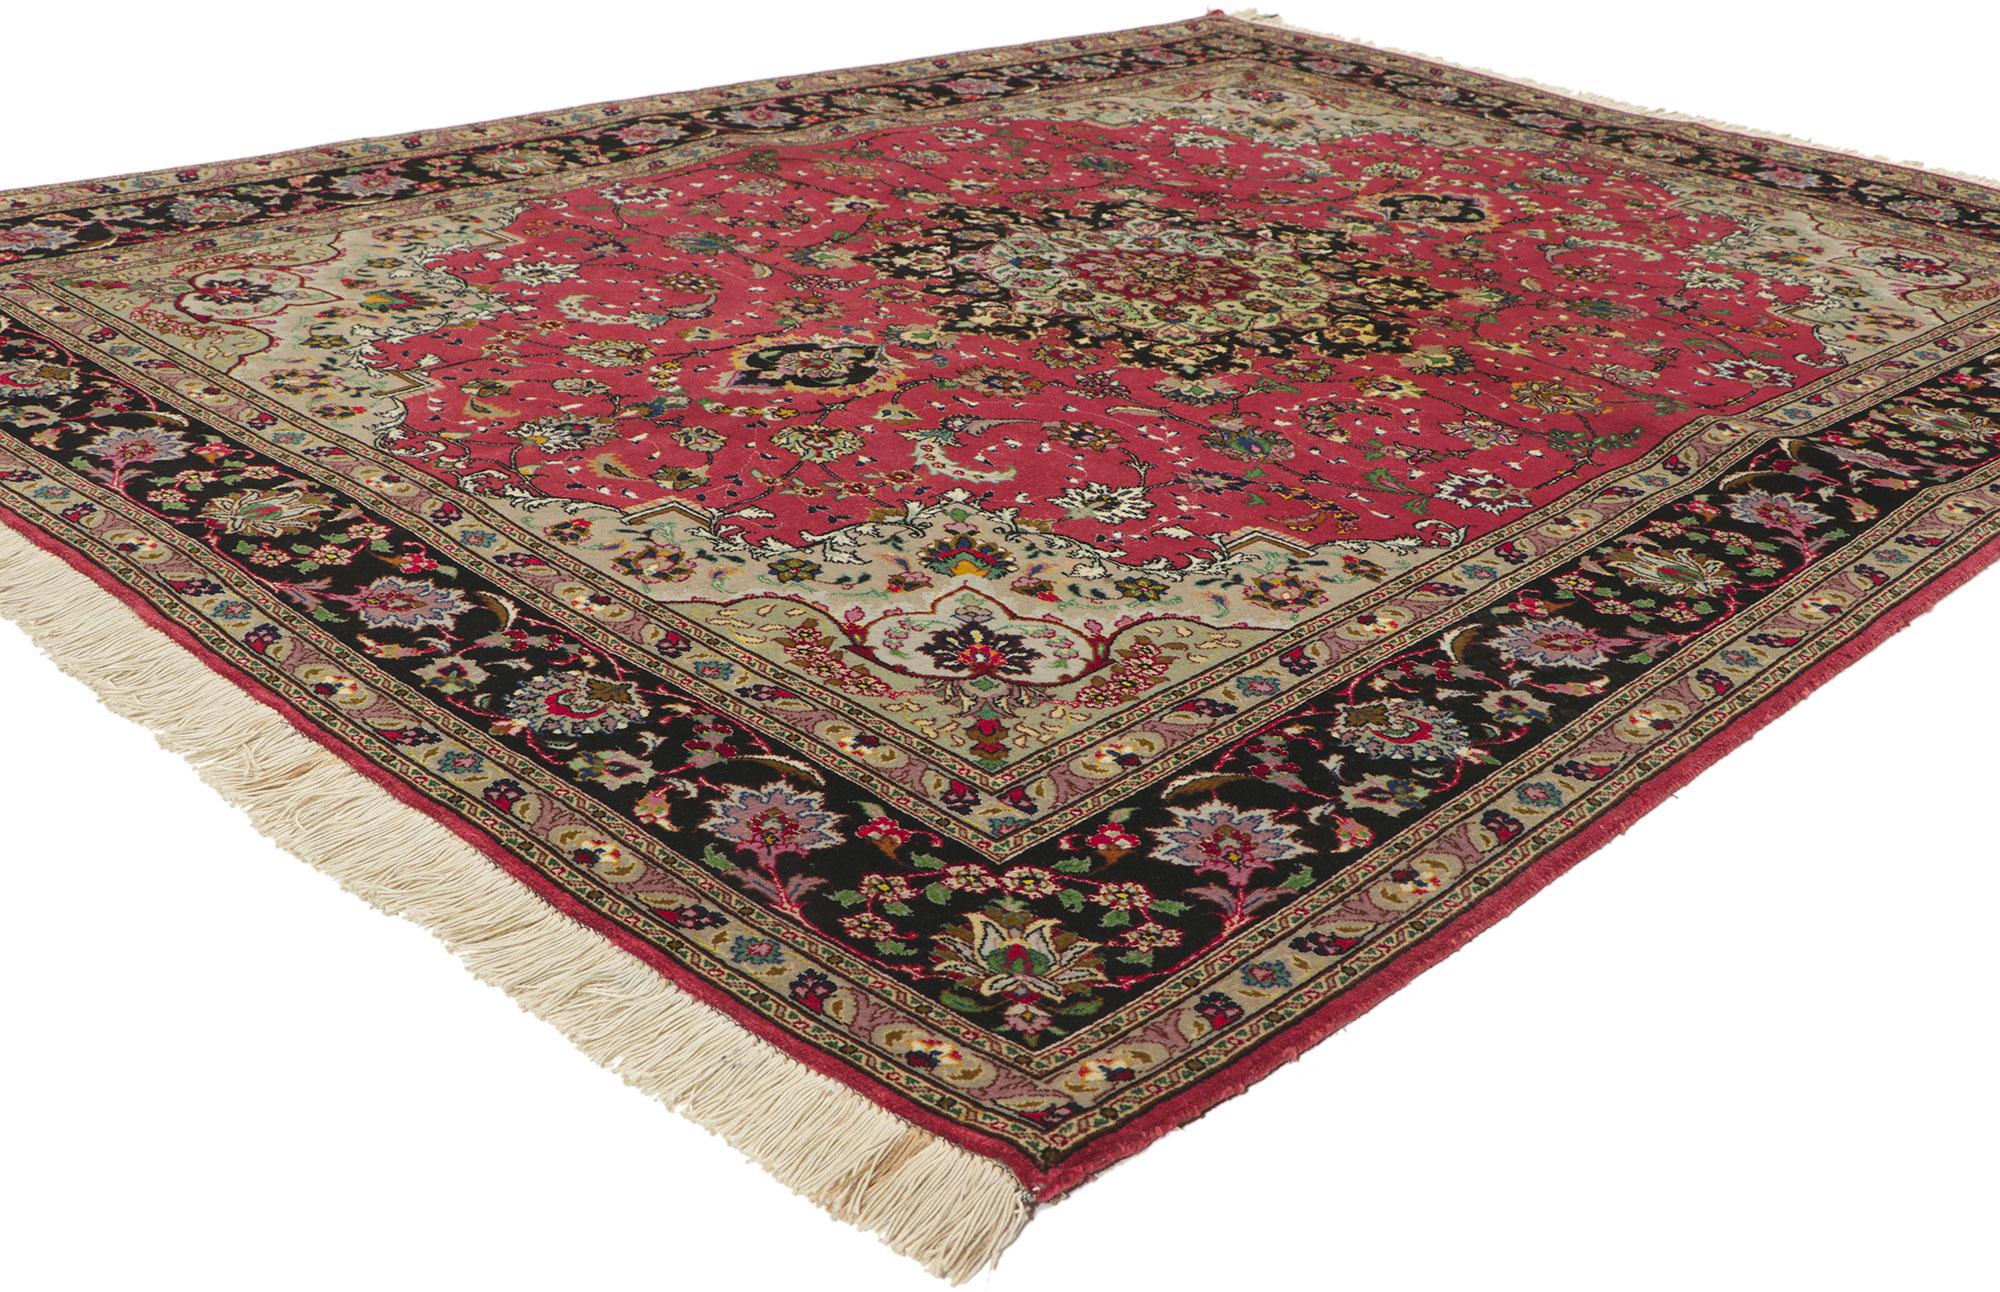 74399 Tapis persan vintage en soie Tabriz, 04'11 X 06'06. 
De l'élégance décontractée à la fraîcheur formelle, ce tapis Tabriz persan vintage en soie noué à la main est prêt à impressionner. Ses couleurs audacieuses évoquent un air de chaleur et de